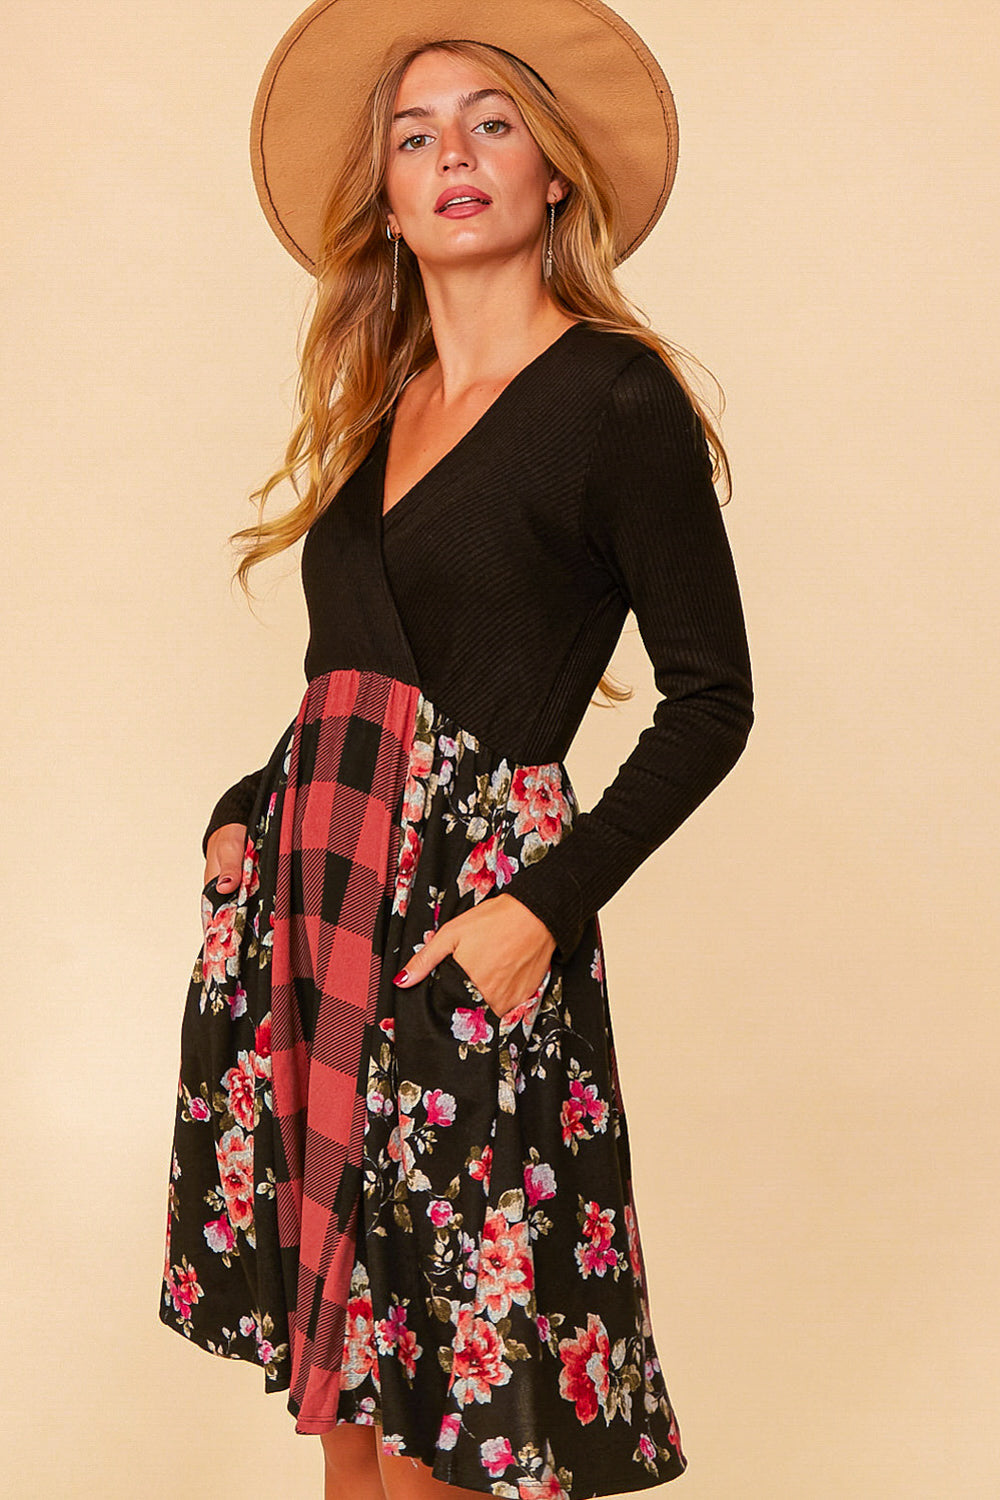 Buffalo Plaid & Floral Fit & Flare Dress – Hello Gorgeous Boutique